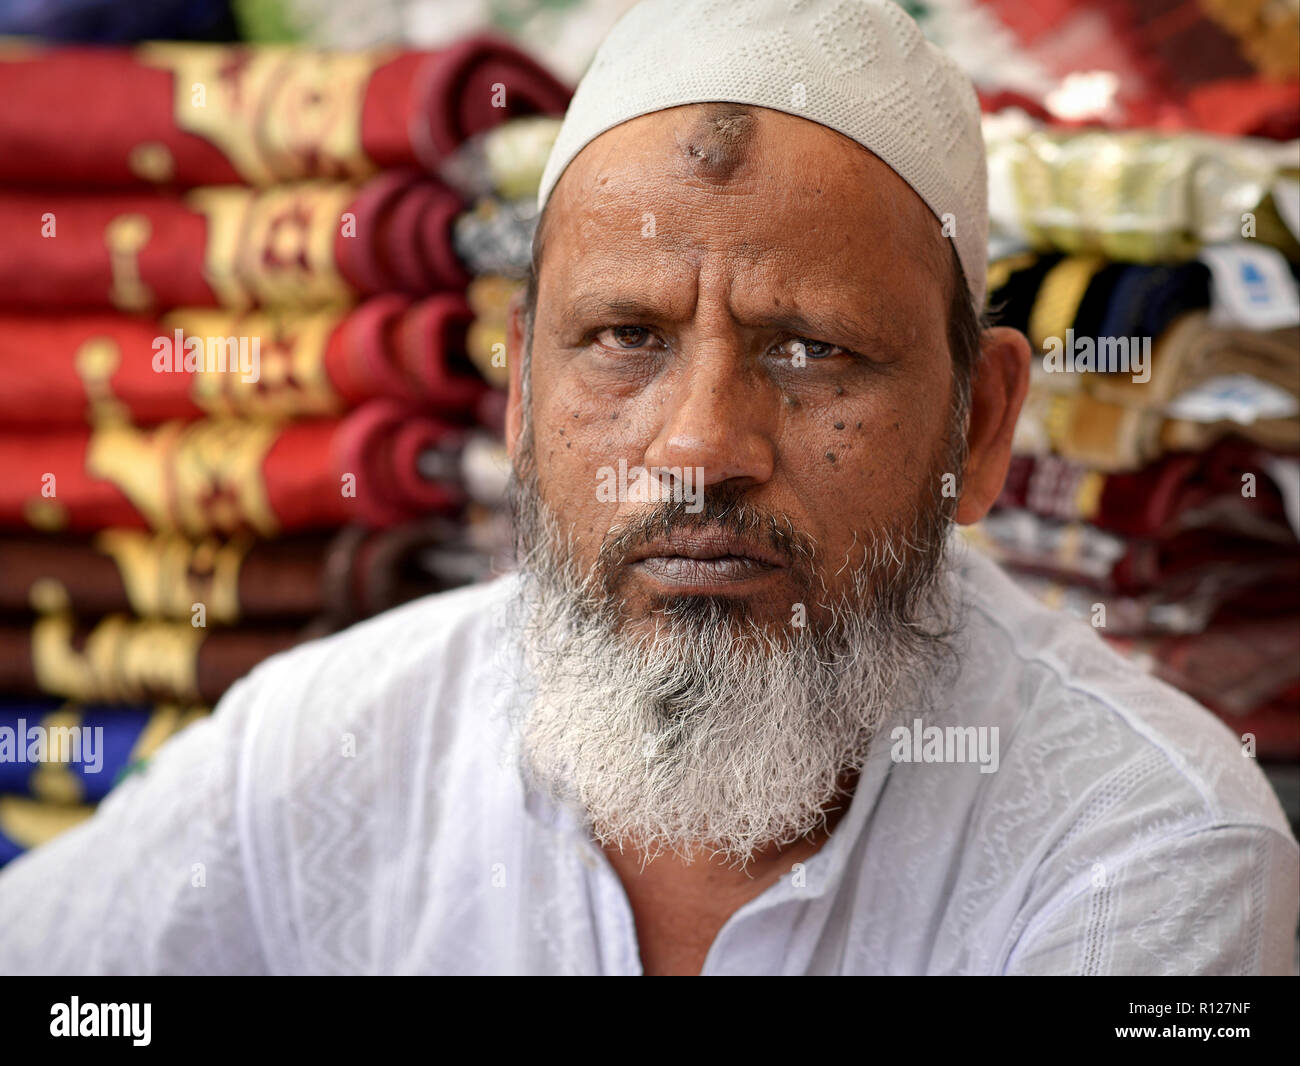 Personnes âgées musulmans indiens marchand avec barbe blanche et islamique très caractéristiques (zebibah) prière bosse sur son front se penche sur l'appareil photo. Banque D'Images